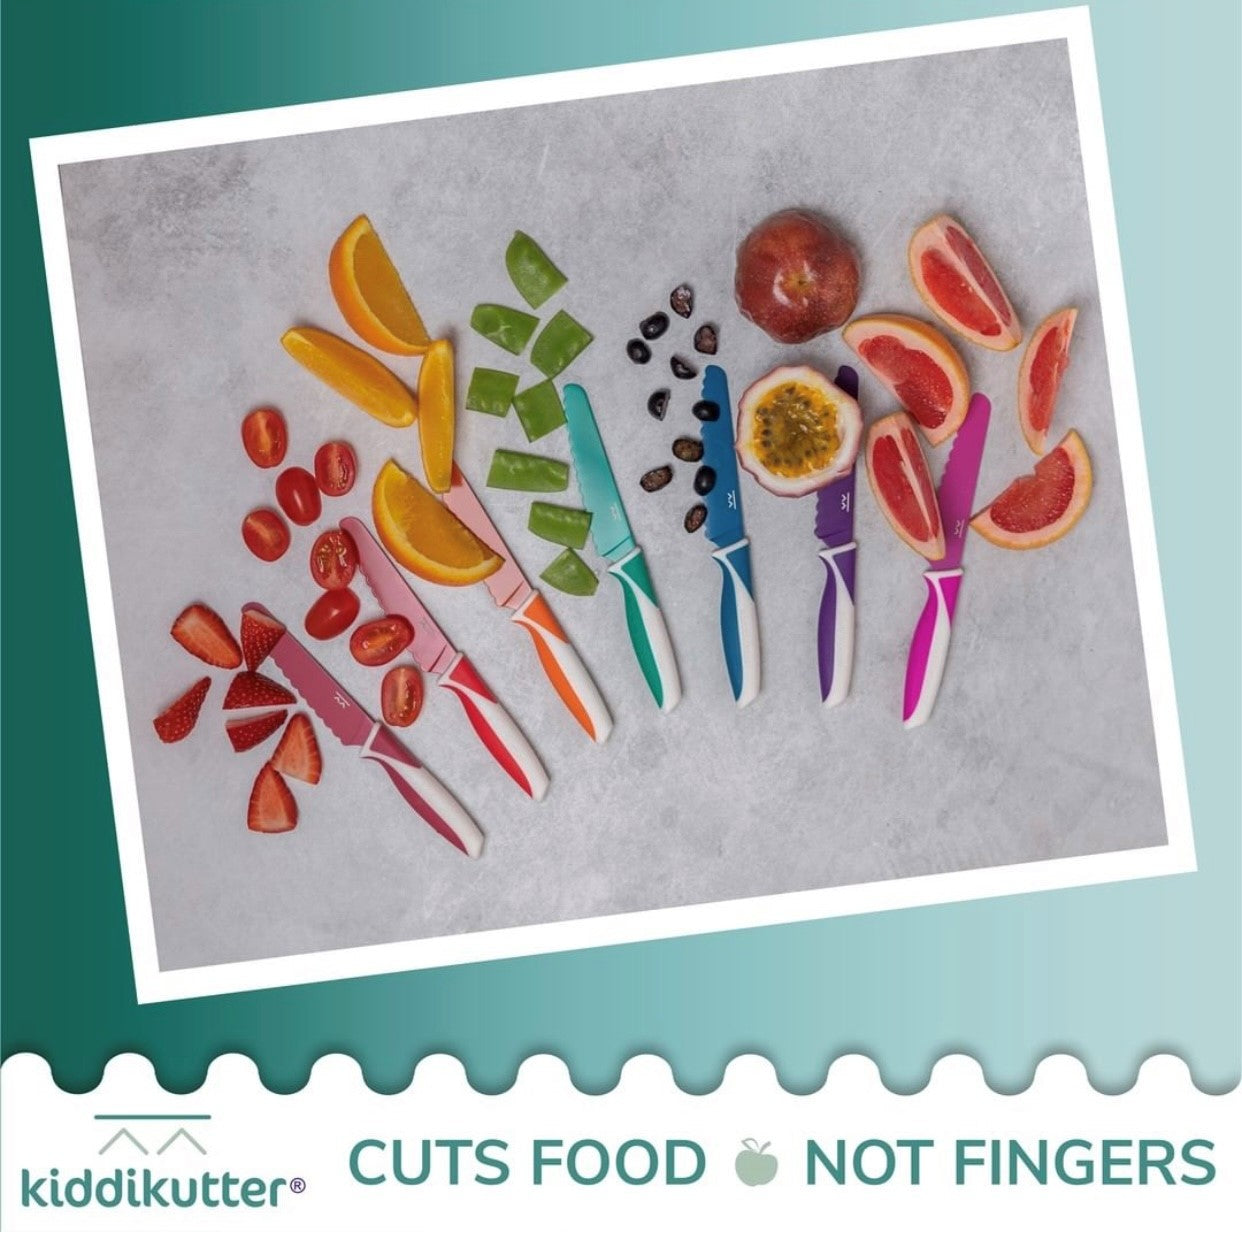    KiddiKutter_knives_colour_range